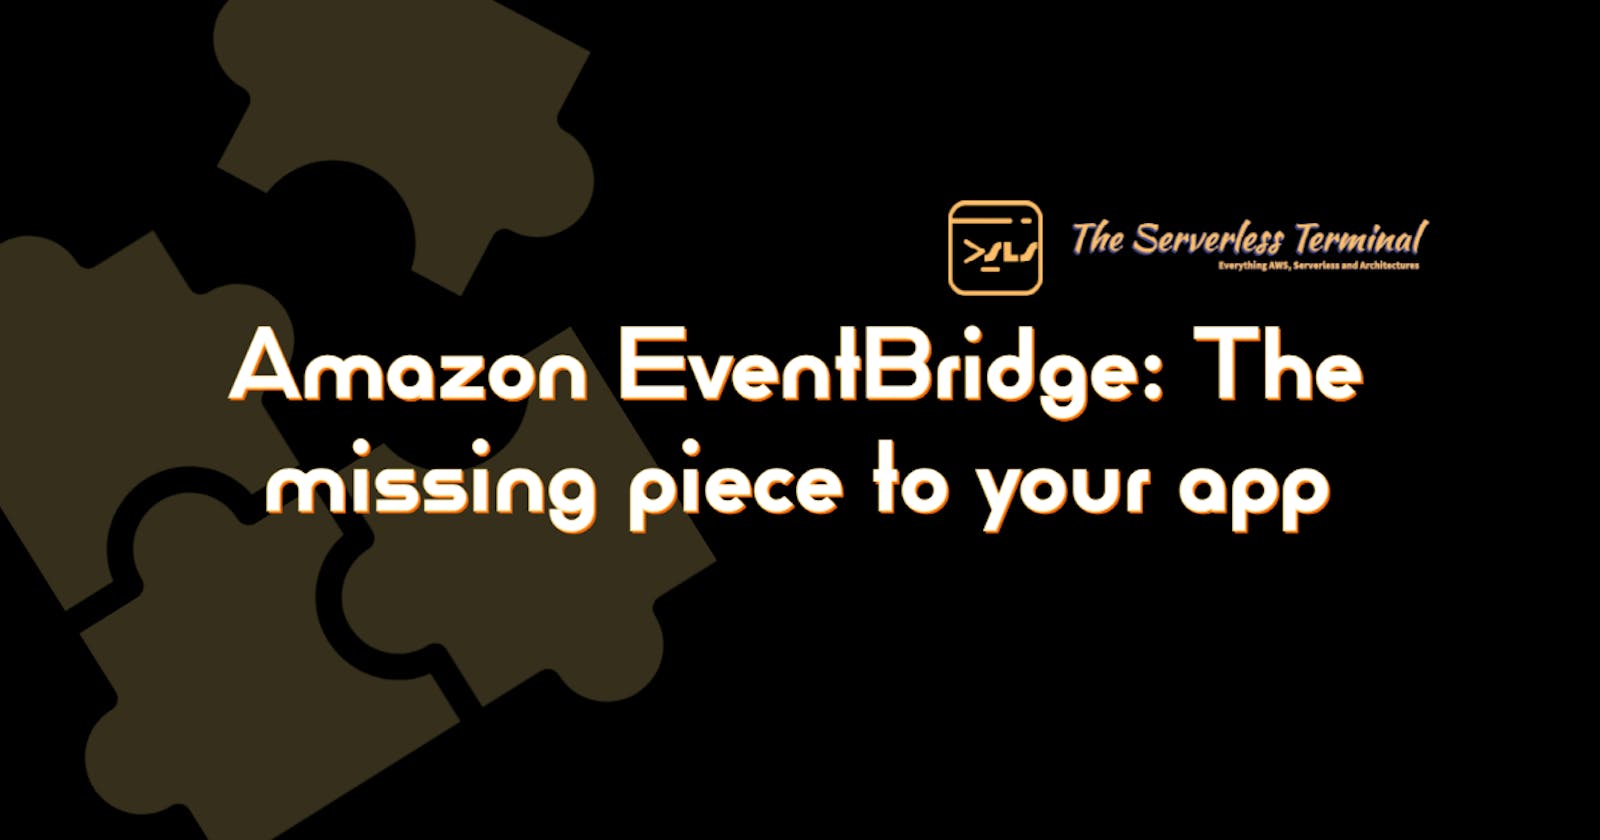 Amazon EventBridge: The missing piece to your app